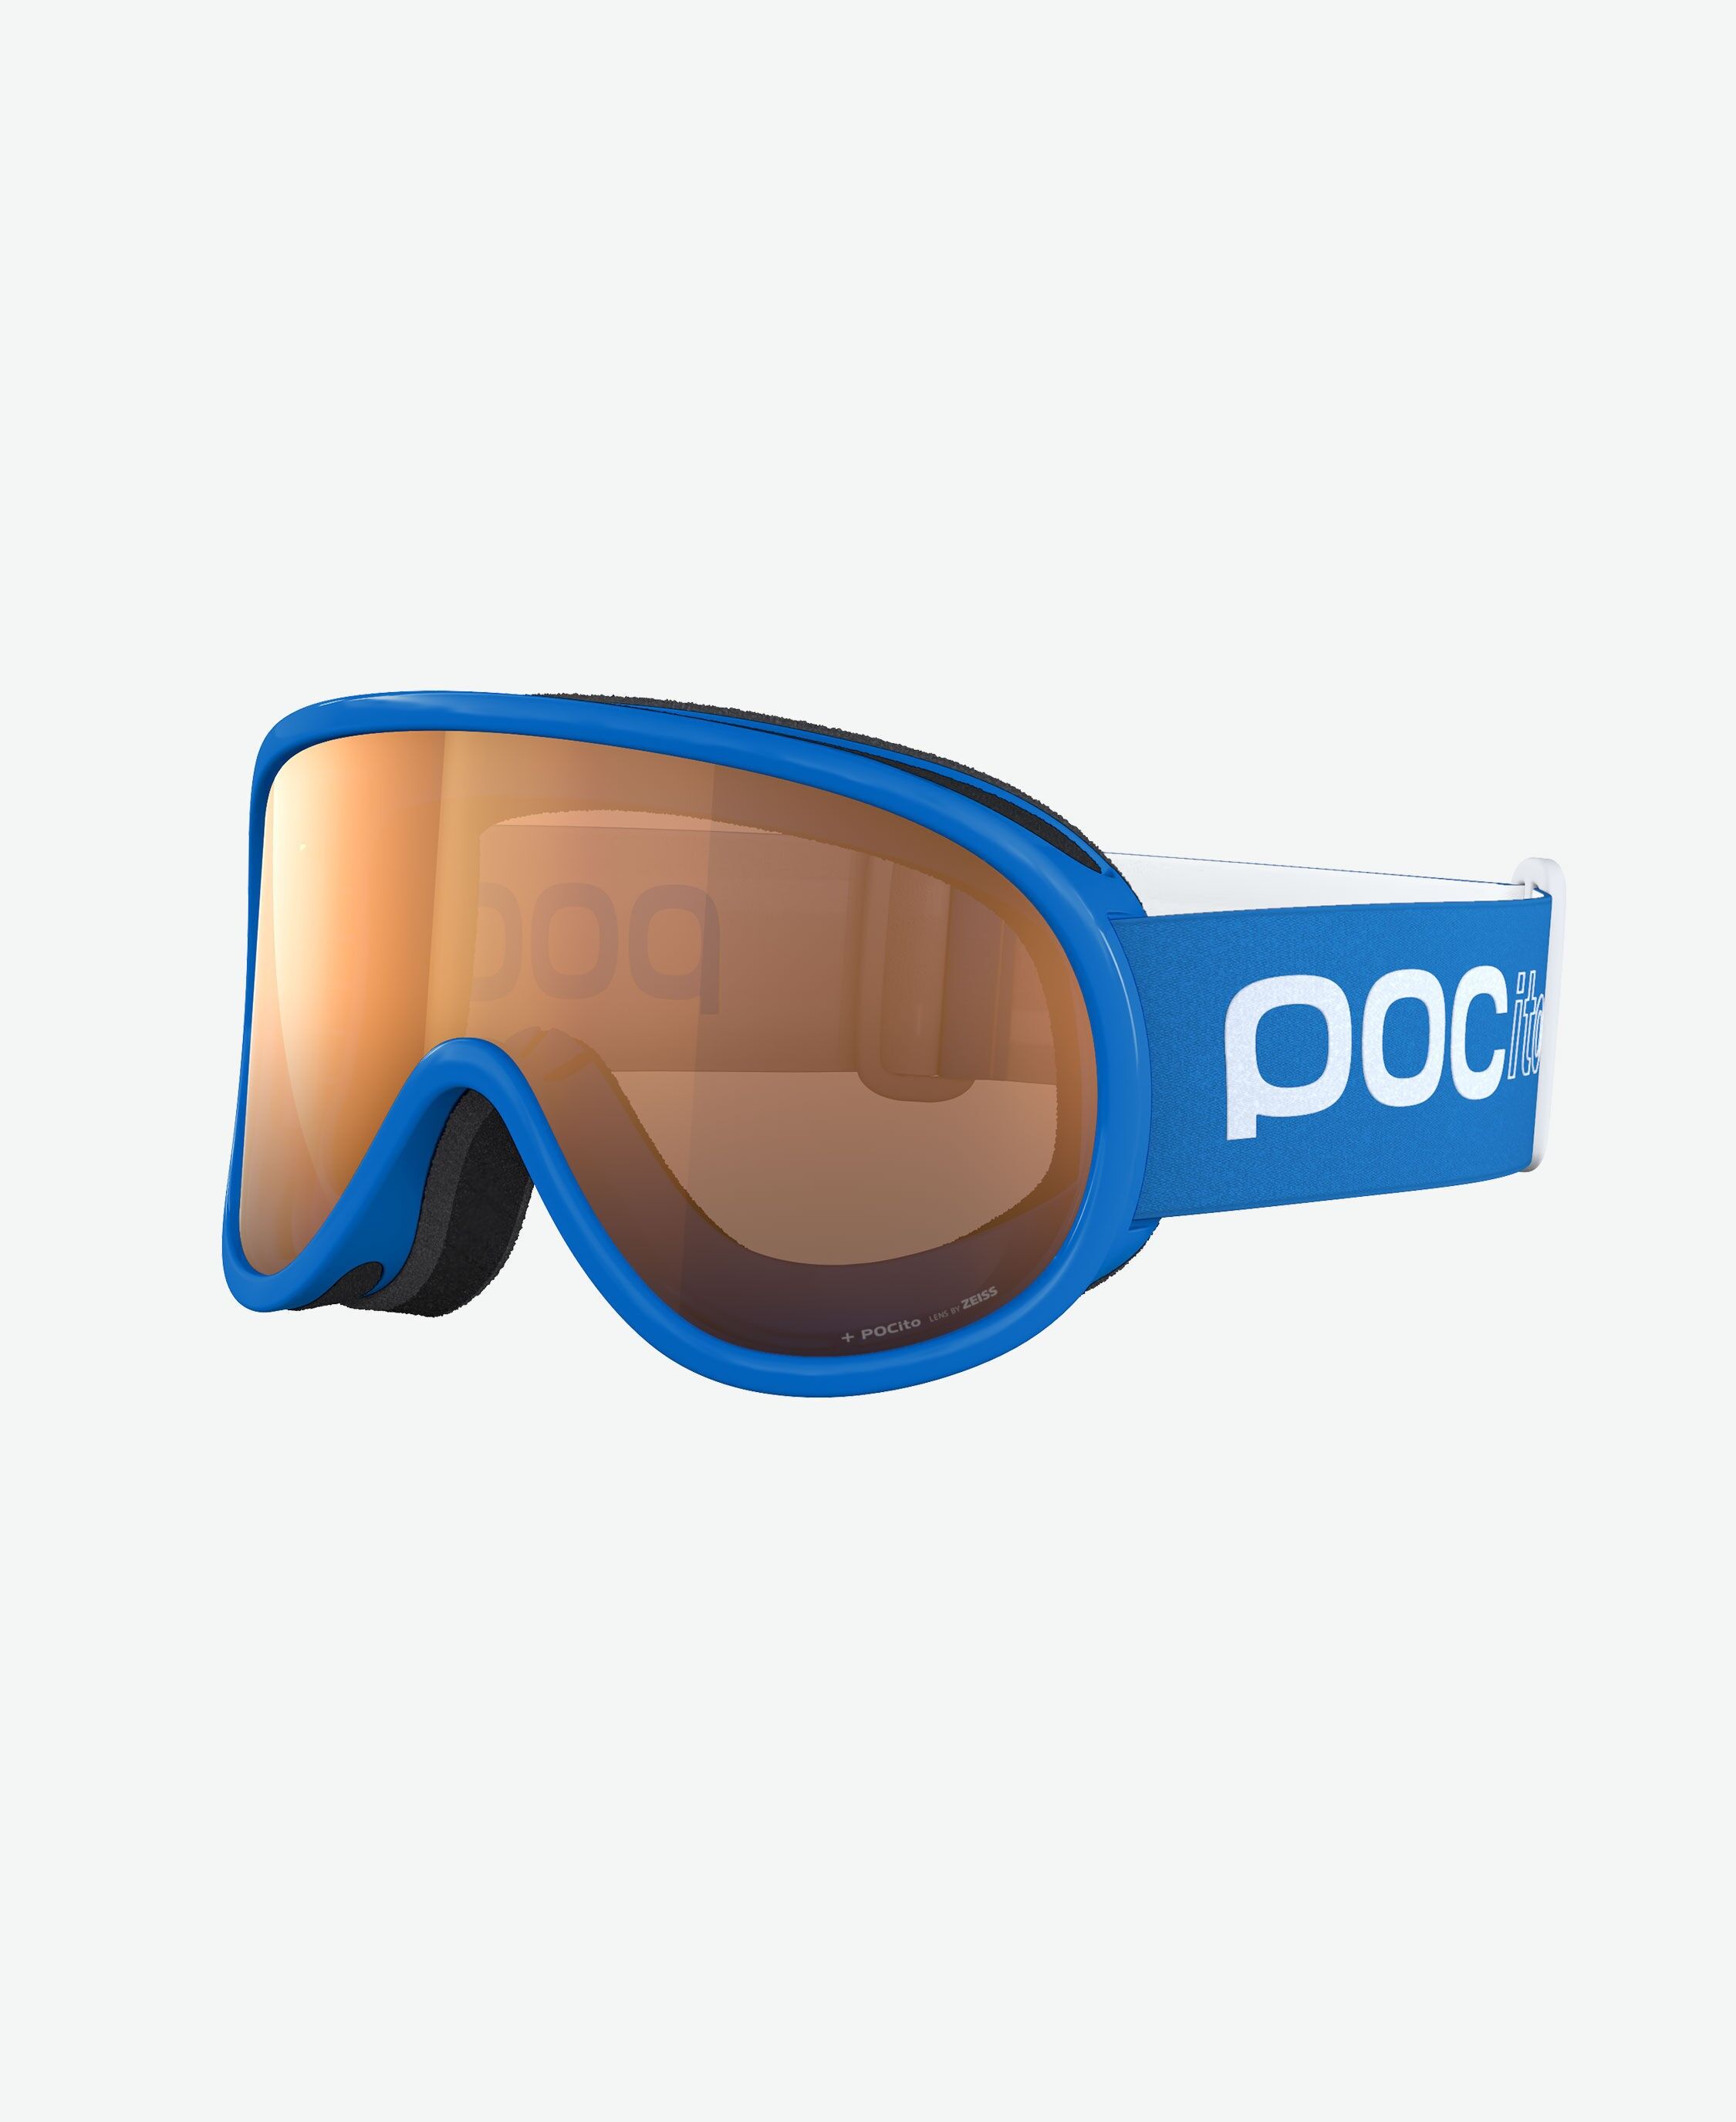 Poc Pocito Retina  - Gafas de esquí - Niños